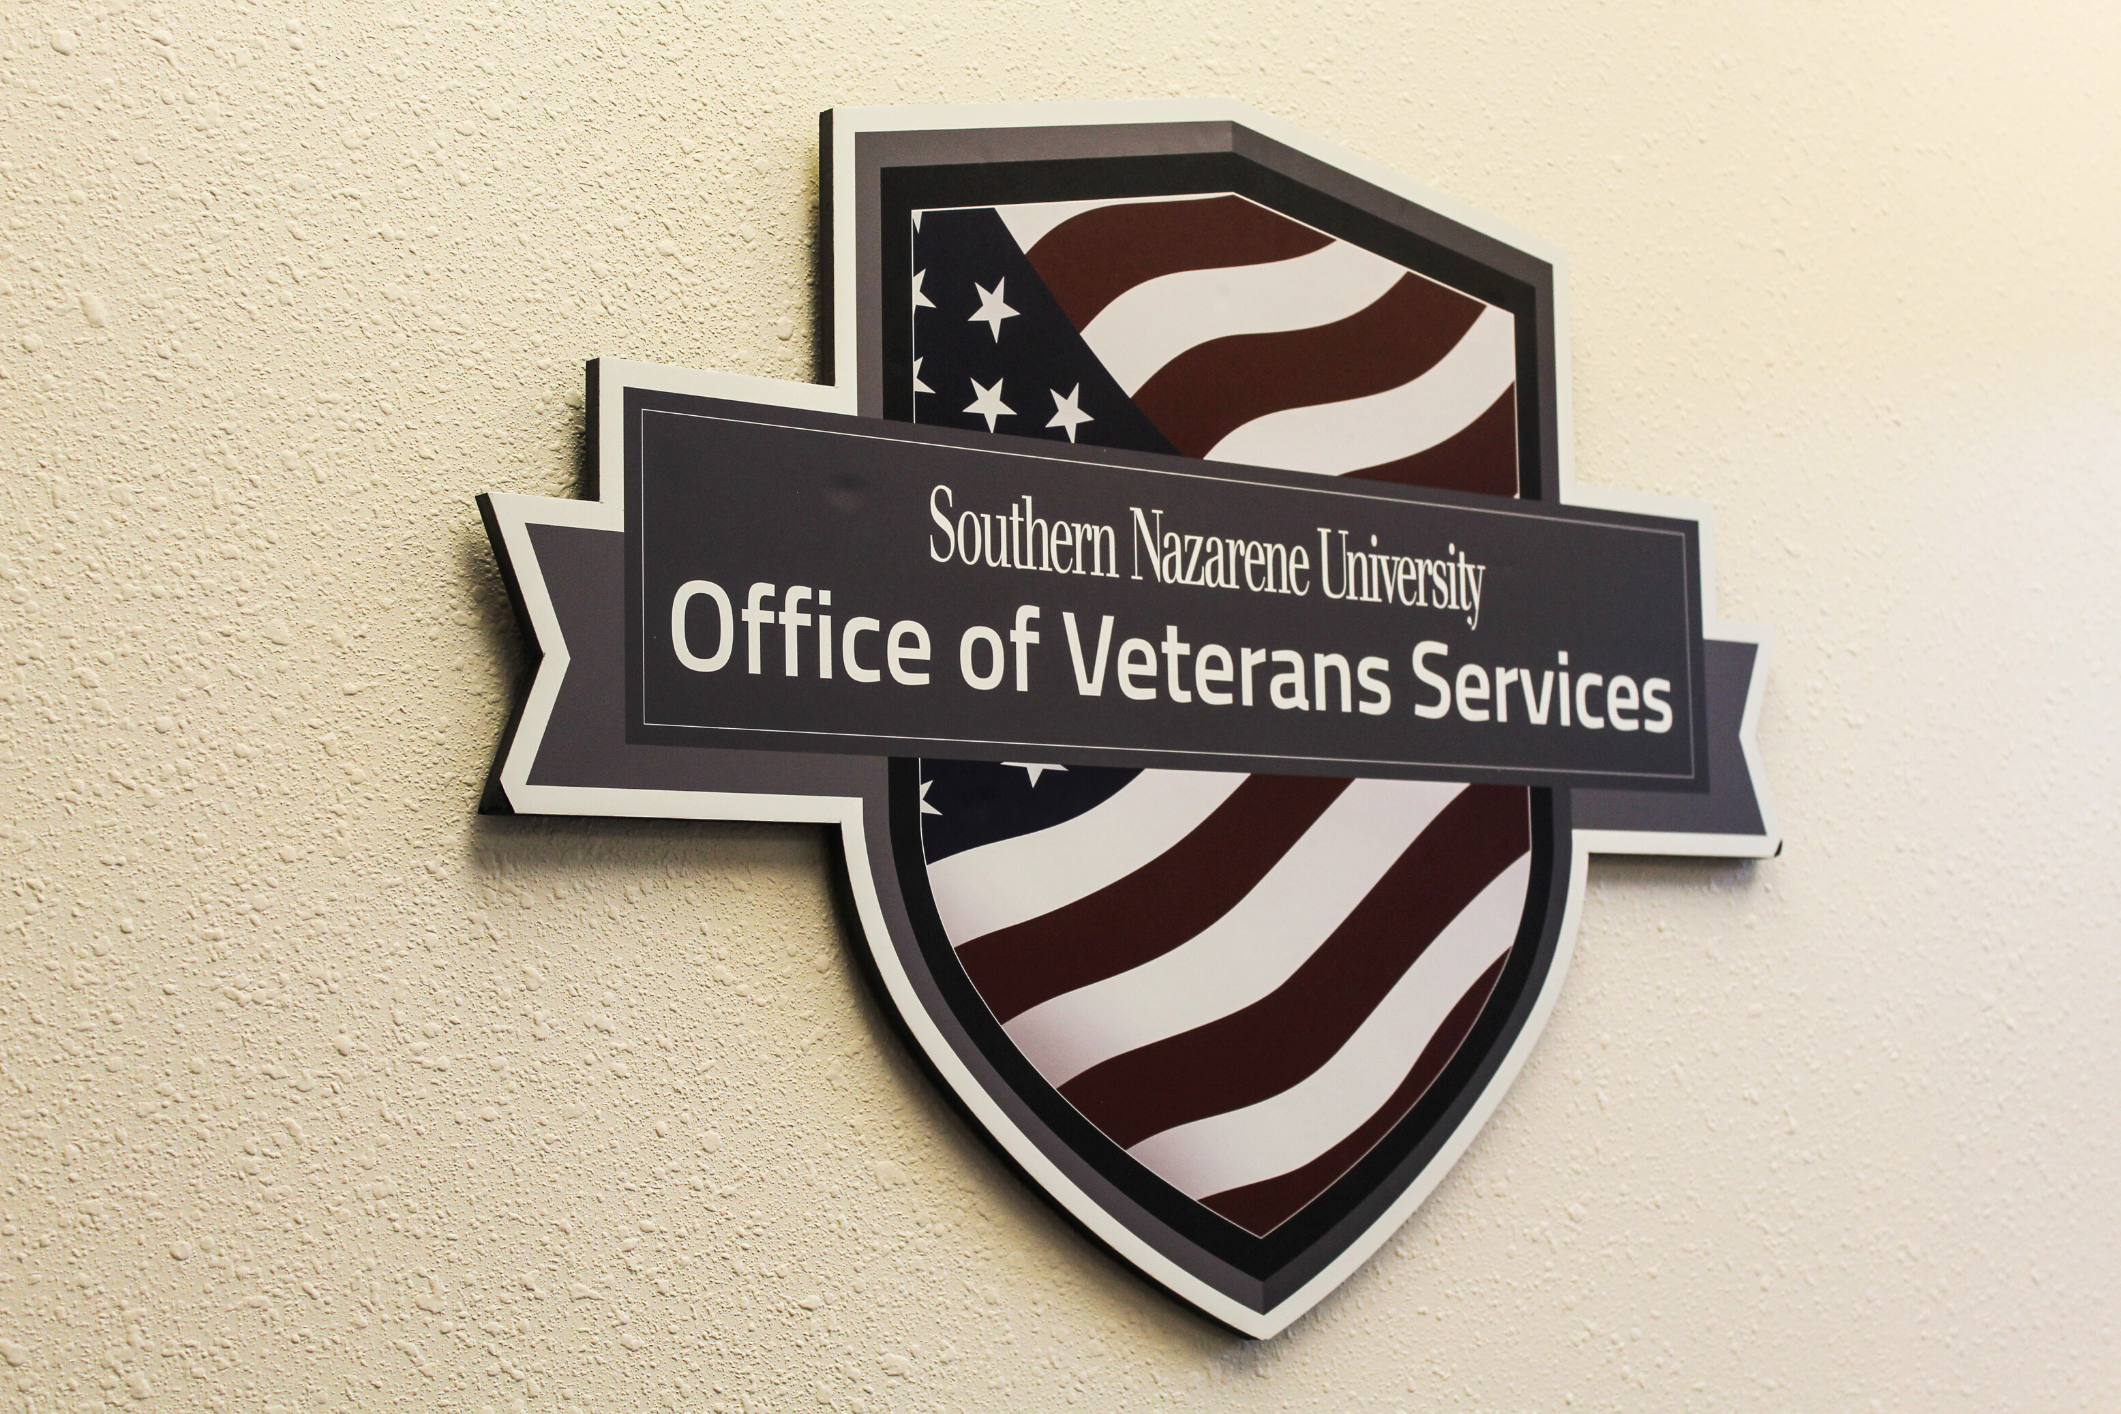 Southern Nazarene University Office of Veterans Services